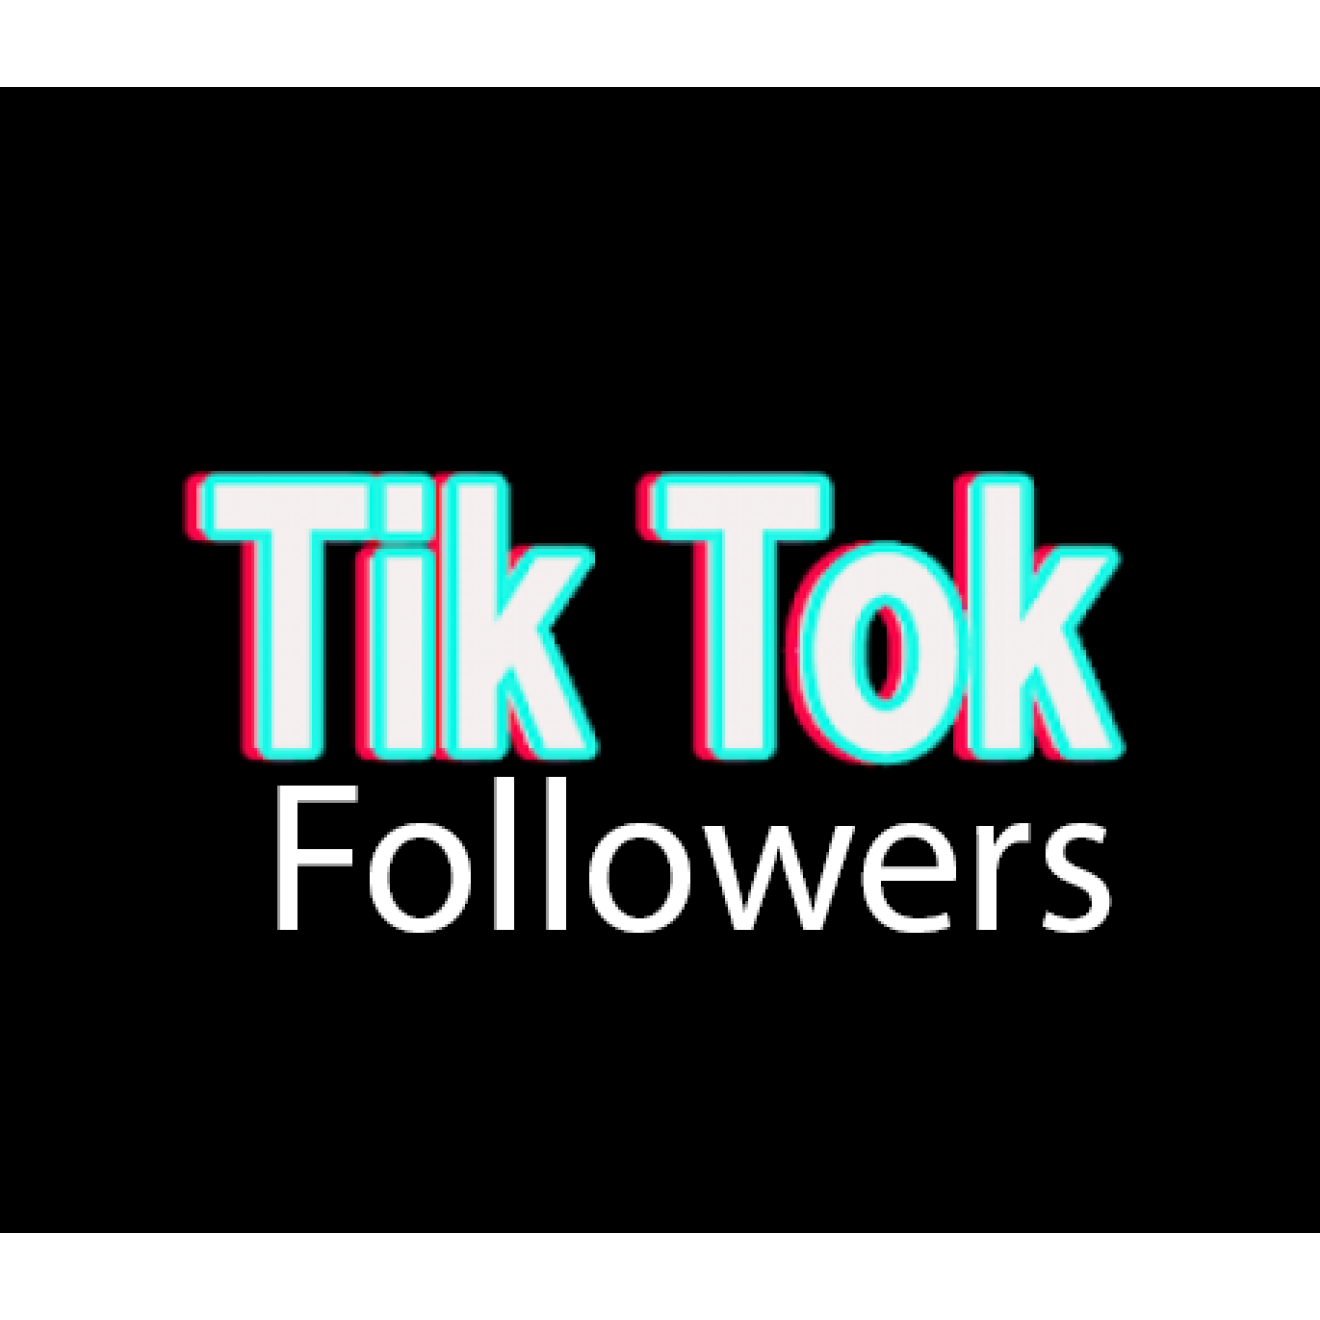 1000 TikTok Followers / Abonnenten für Dich